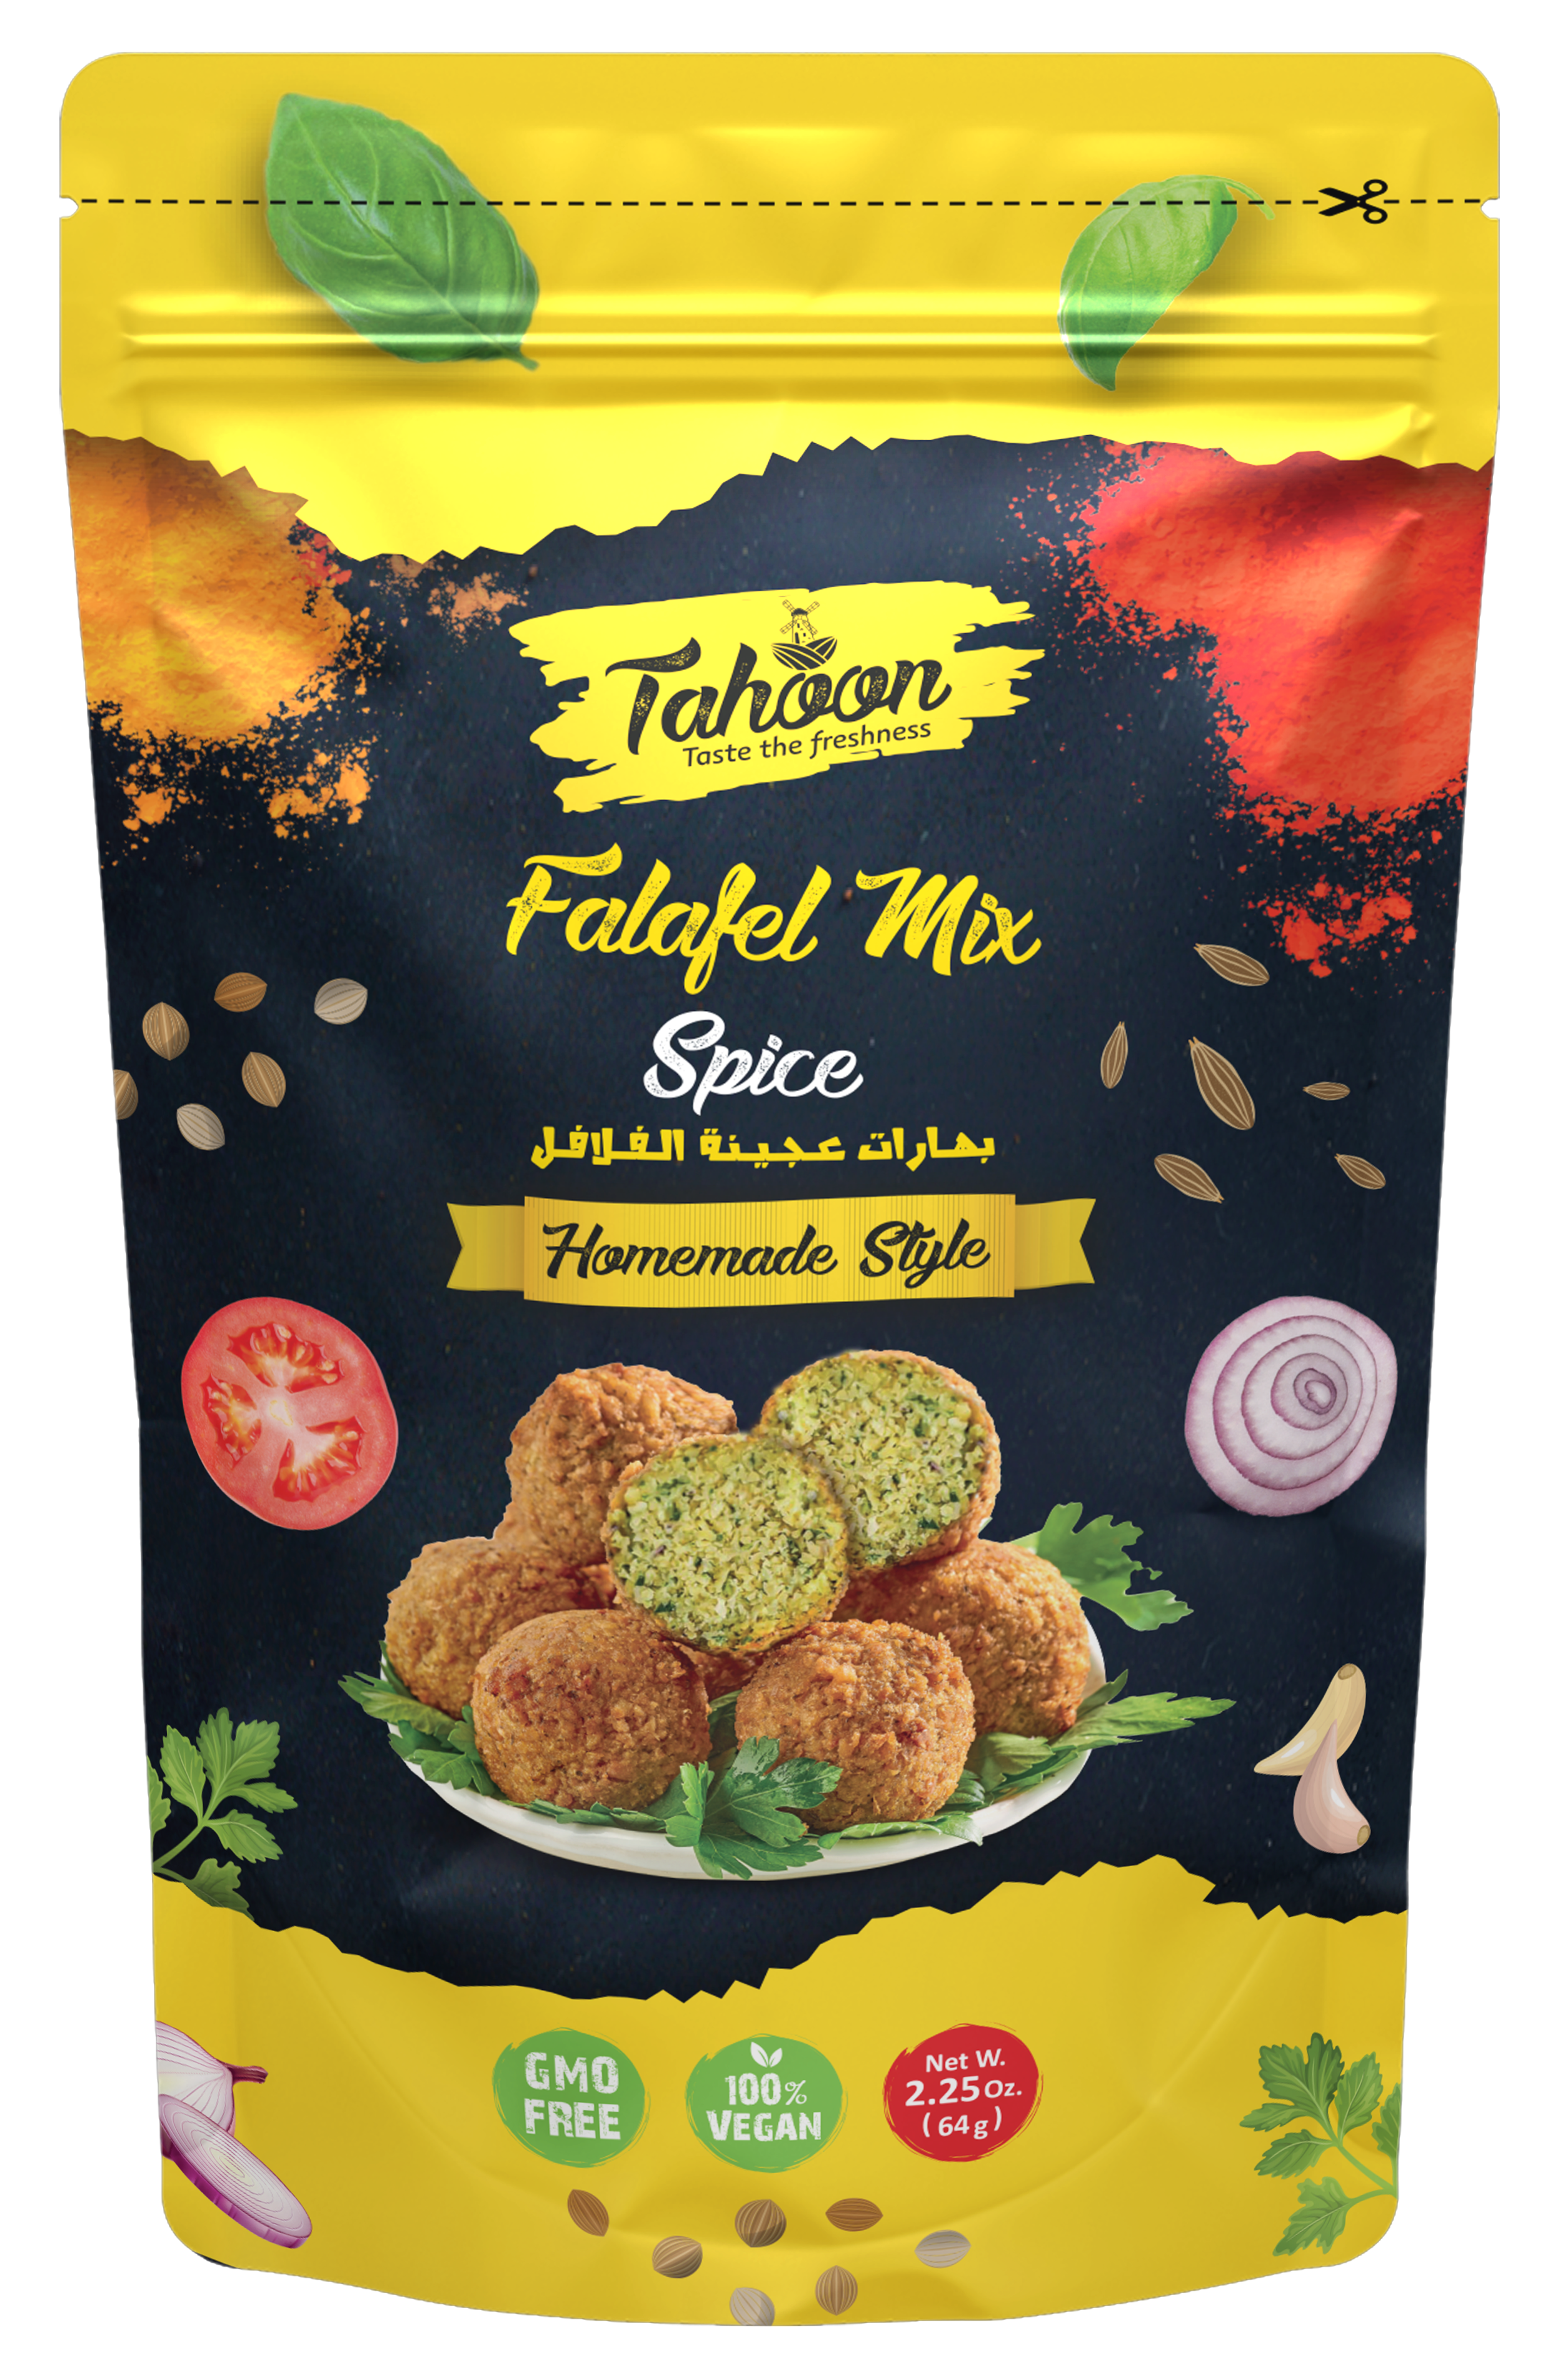 puls Terapi Stort univers Falafel Mix Spice 2.25 oz. - 4.50 oz. – Tahoon